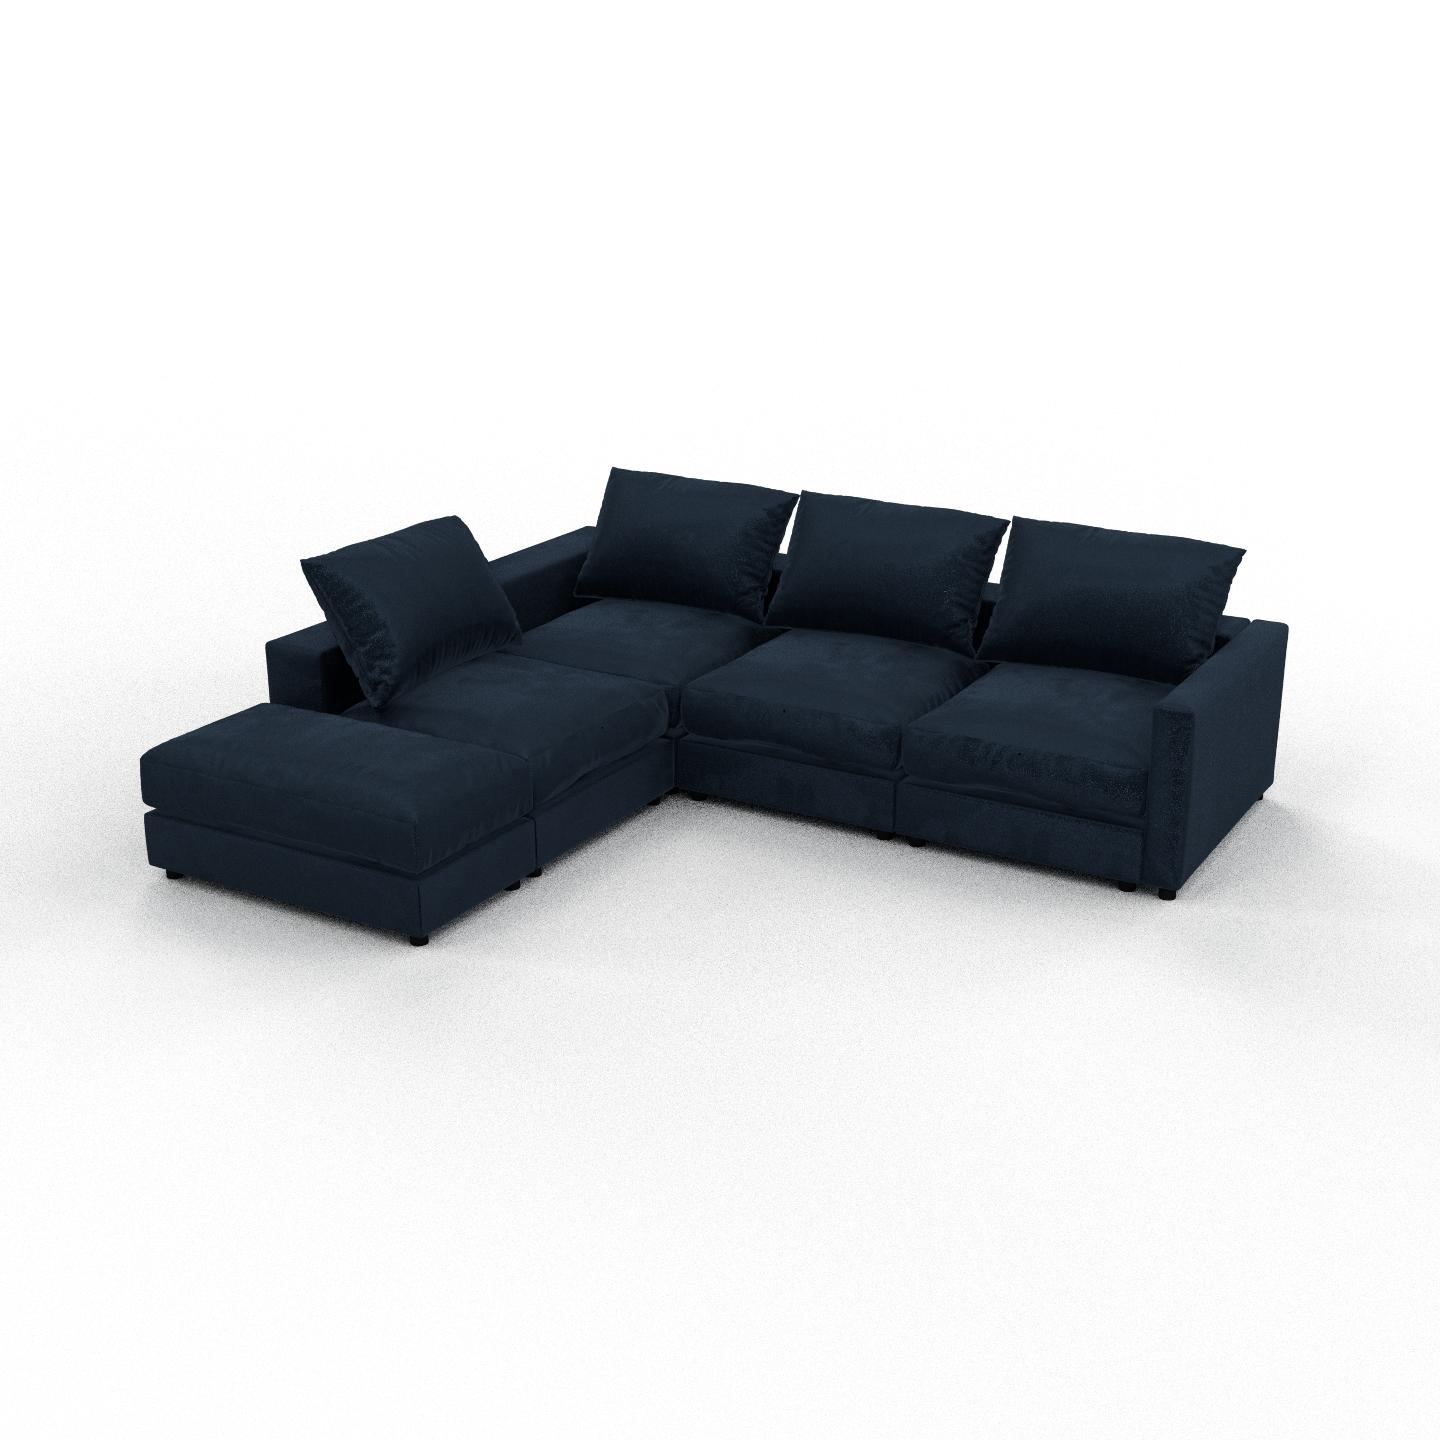 MYCS Ecksofa Samt Nachtblau - Flexible Designer-Polsterecke, L-Form: Beste Qualität, einzigartiges Design - 270 x 56 x 234 cm, konfigurierbar